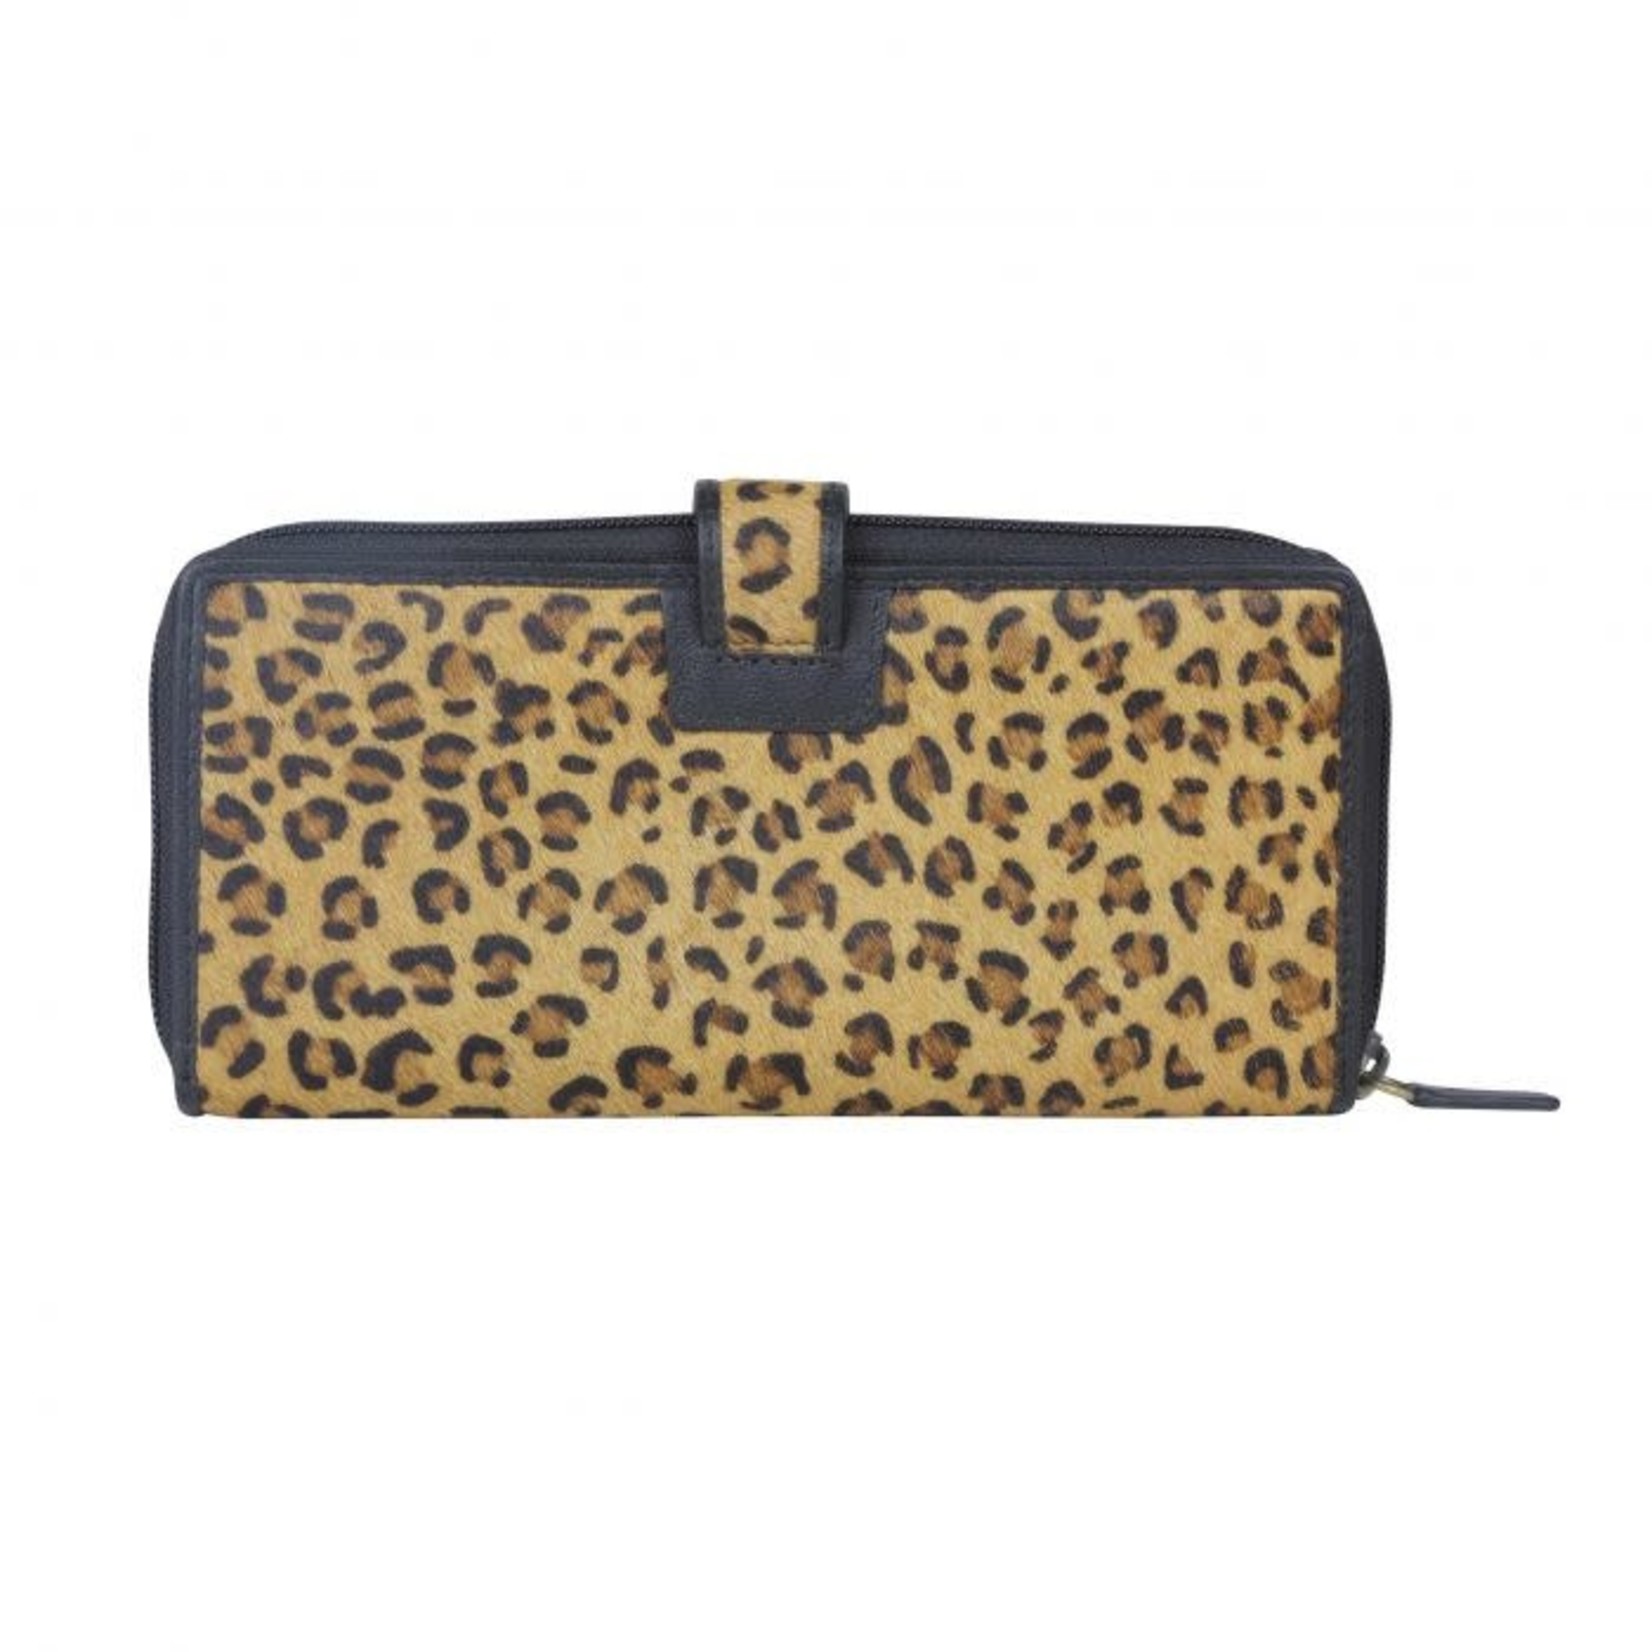 Myra Bags S-3619 Gutsy Leopard Print Wallet